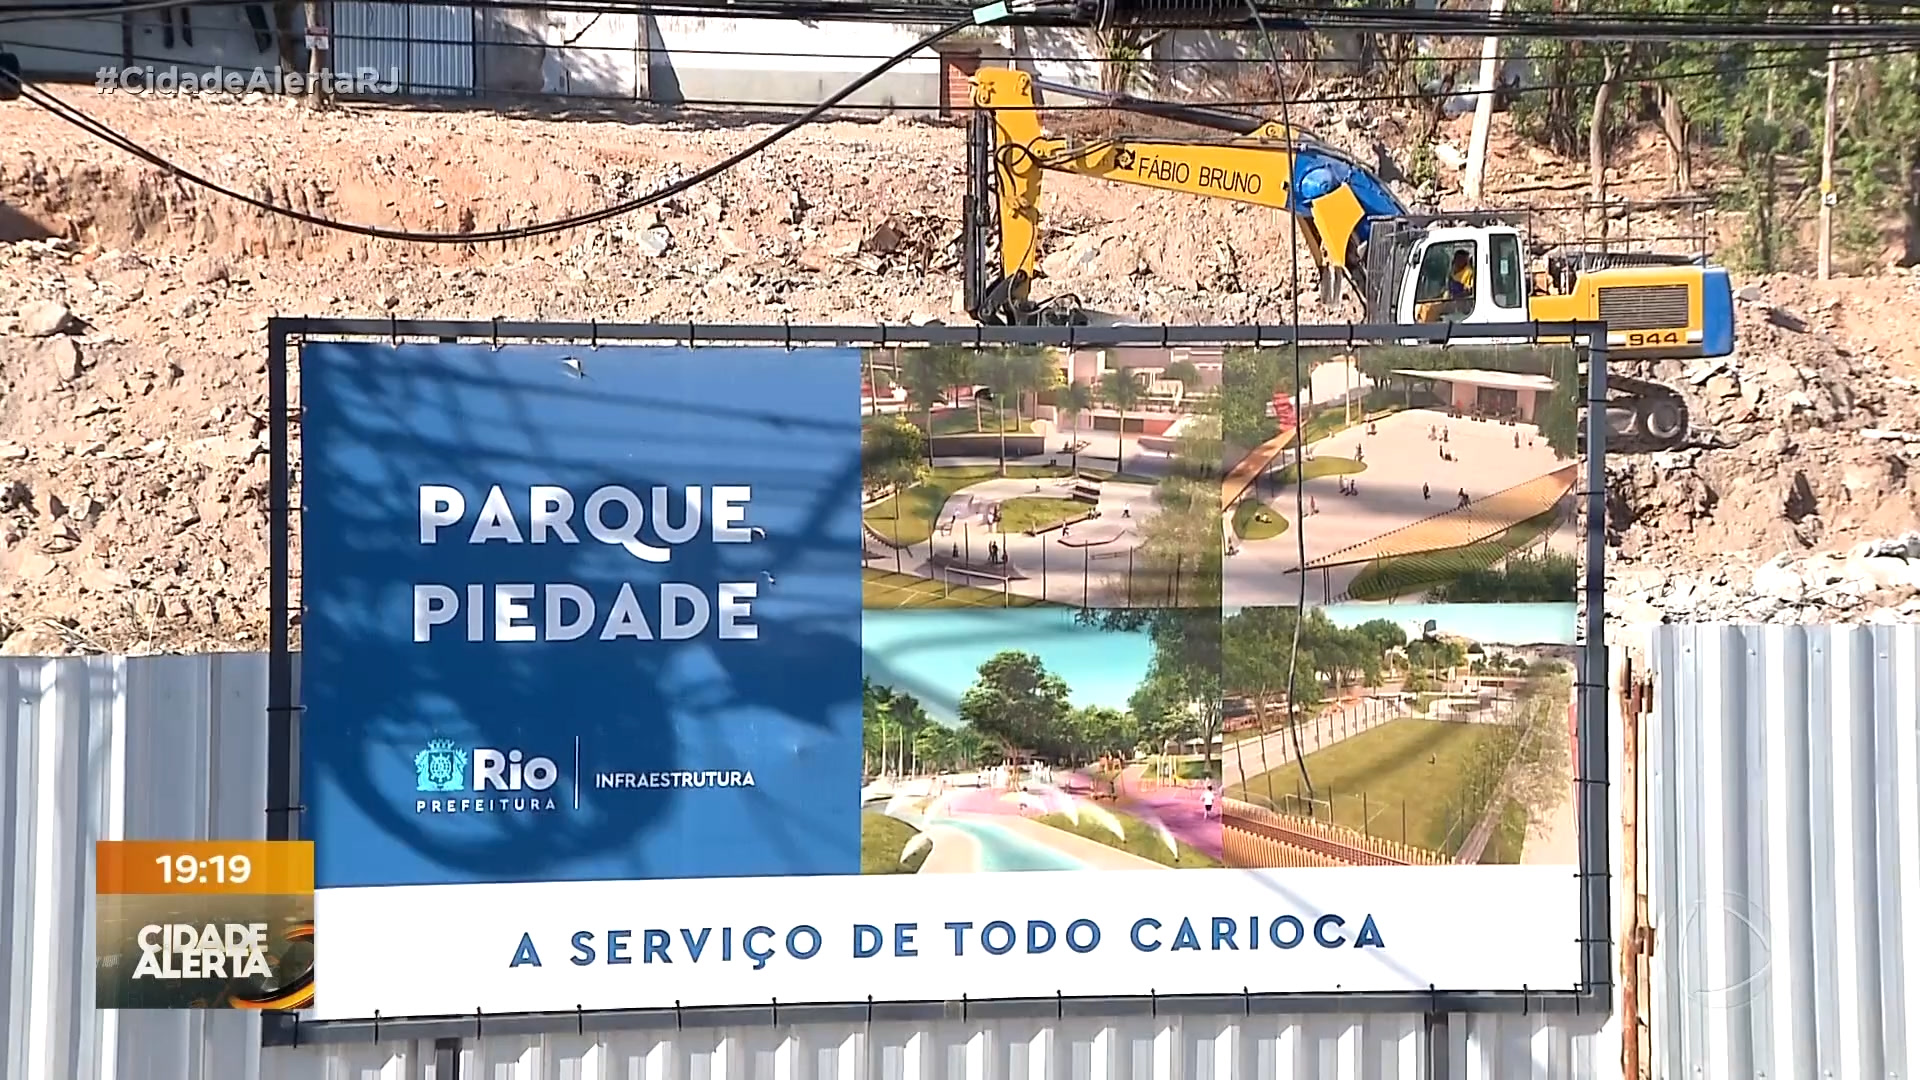 Vídeo: Policia investiga tentativa de extorsão durante obras do Parque Piedade na zona norte do Rio